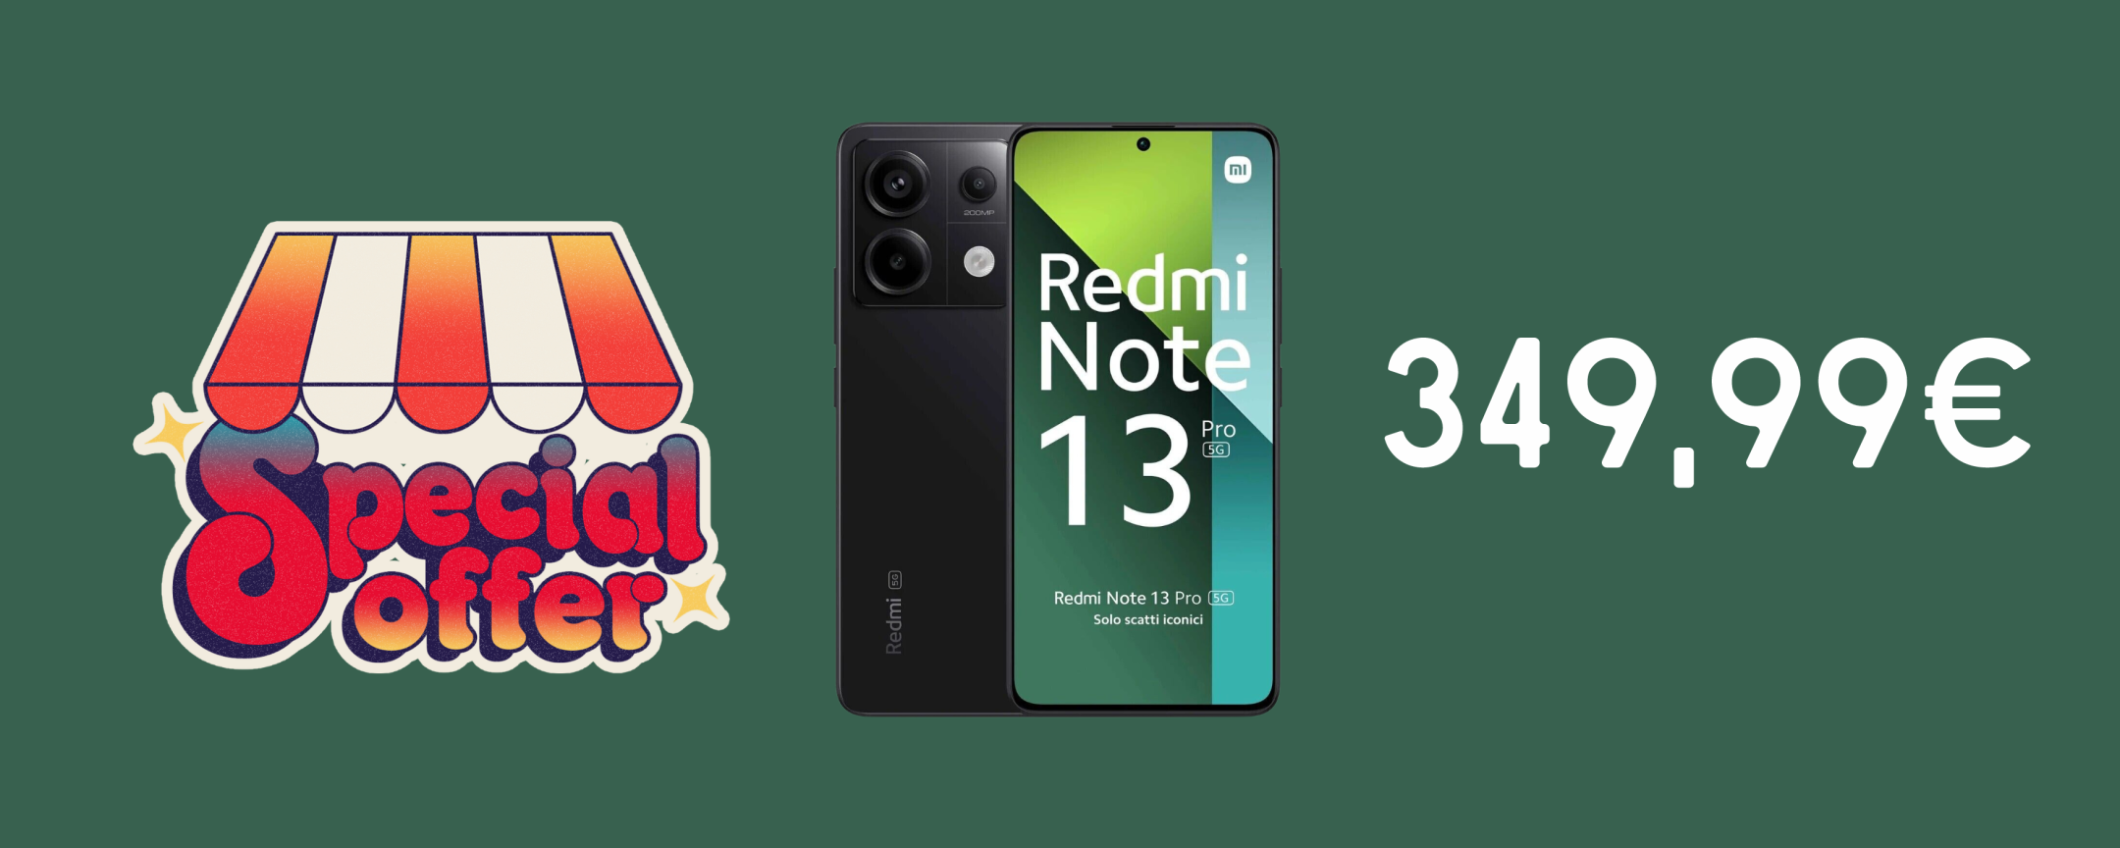 Redmi Note 13 Pro 5G con batteria INFINITA a soli 349,99€